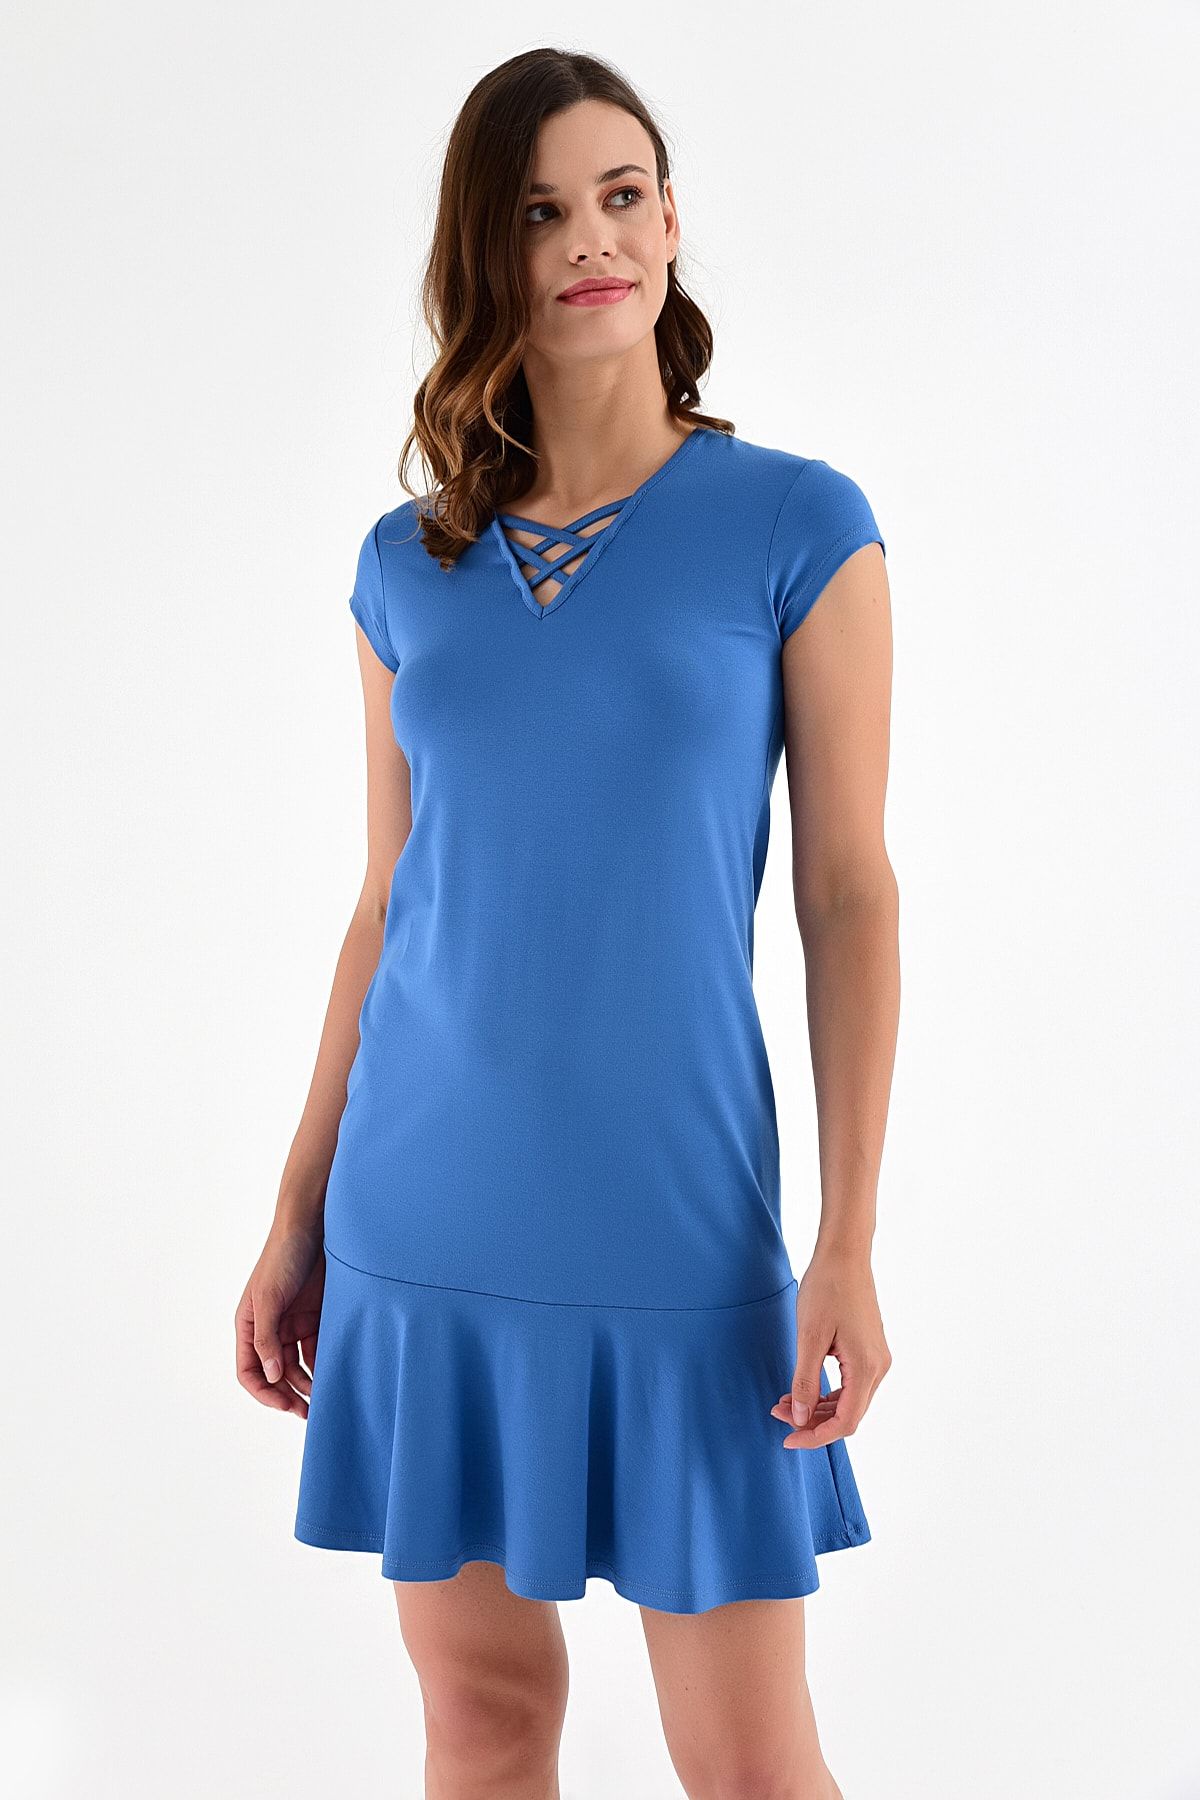 Laranor Kadın İndigo Yaka Detay Etek Ucu Volanlı Elbise 20L6810